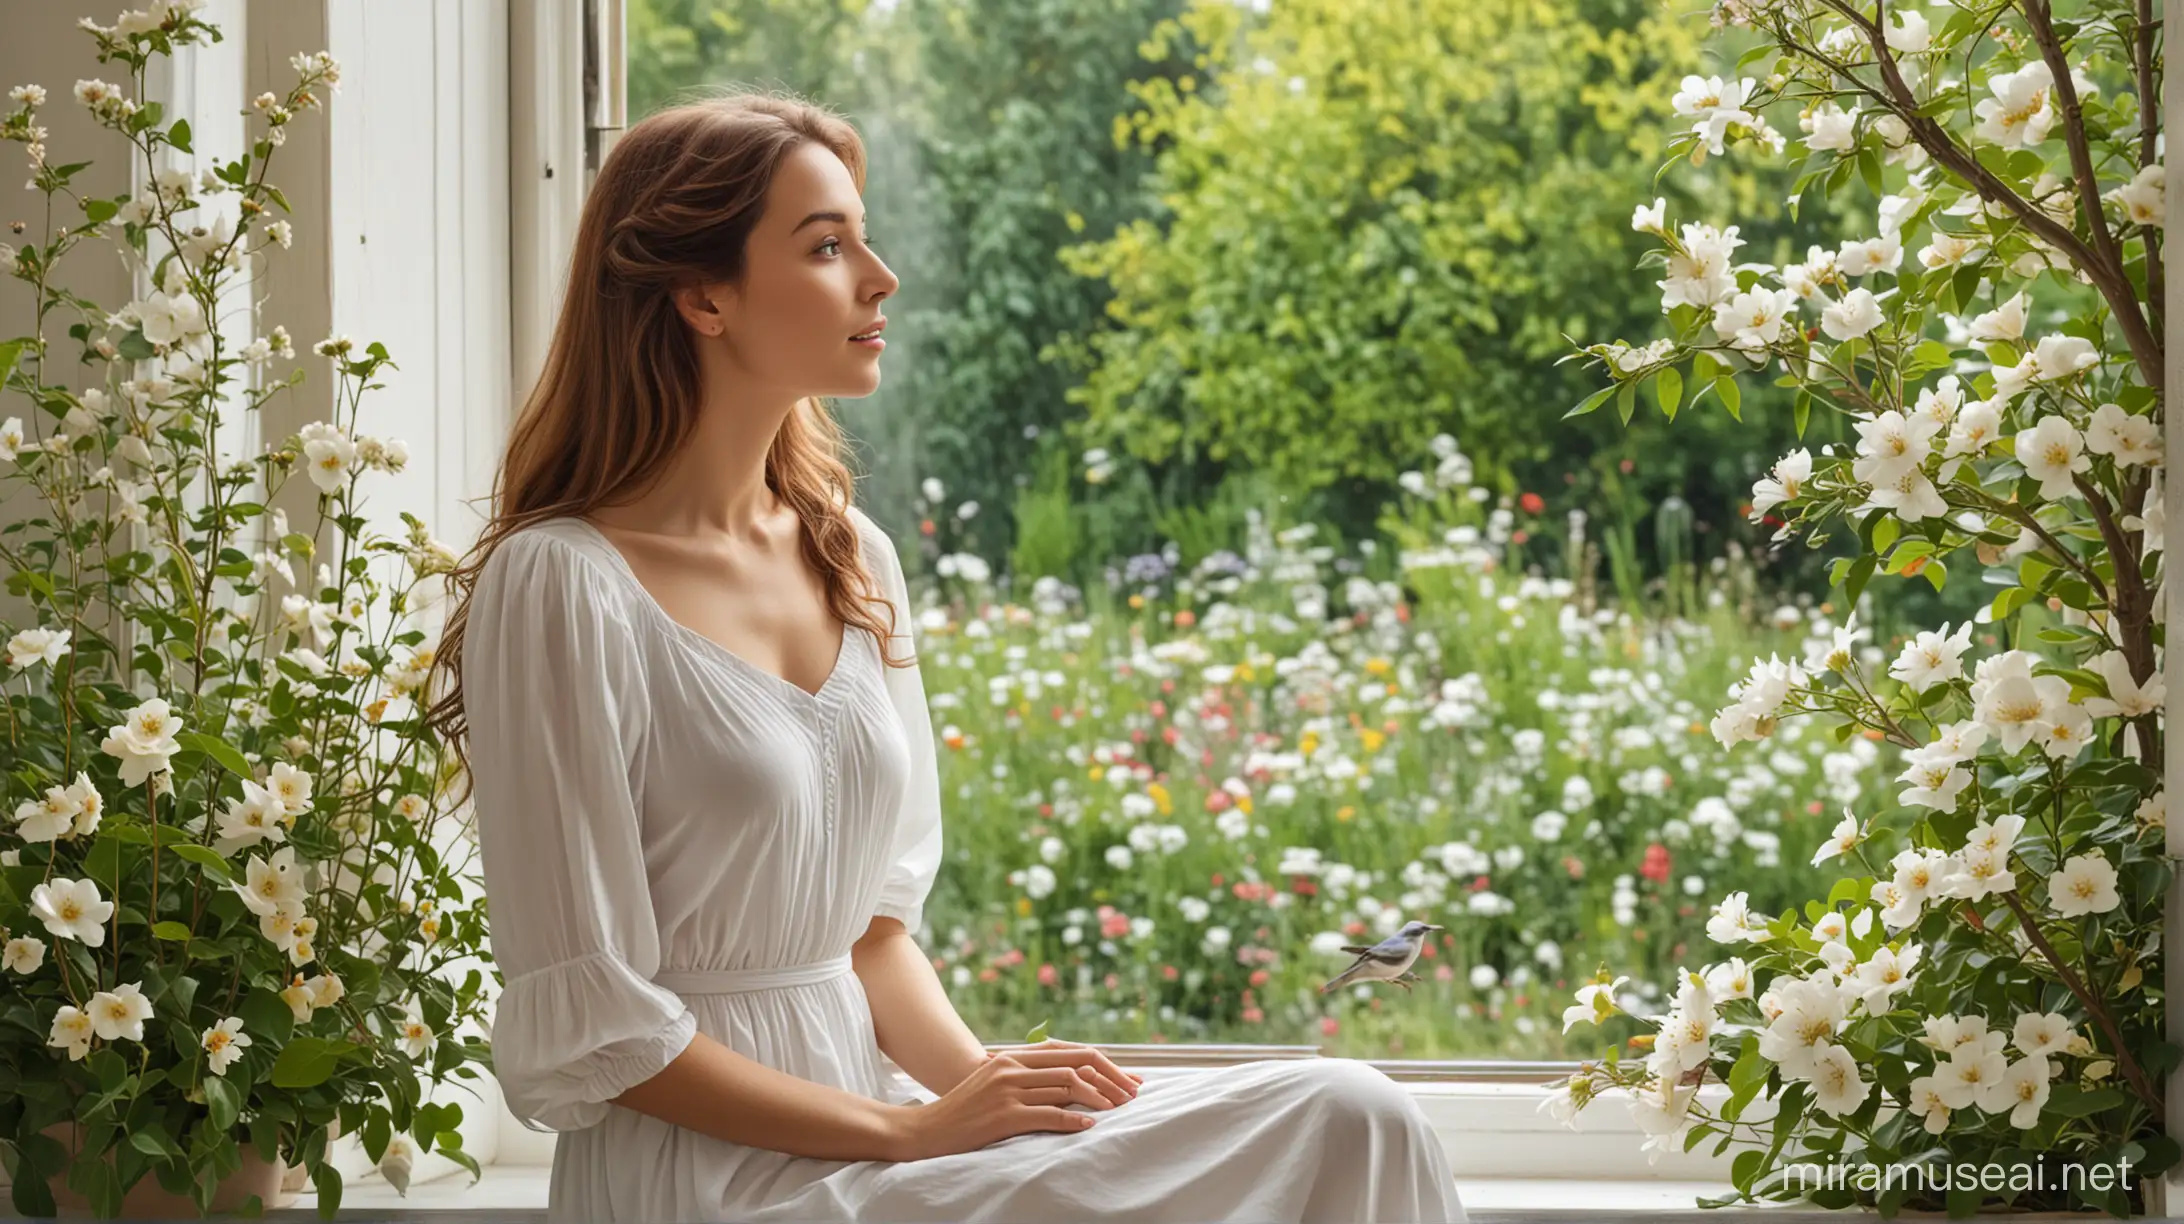 "нарисуй счастливую и в тоже время слегка задумчивую женщину в белом скромном платье, смотрящую в окно, выходящее в красивый цветущий сад и птицами"